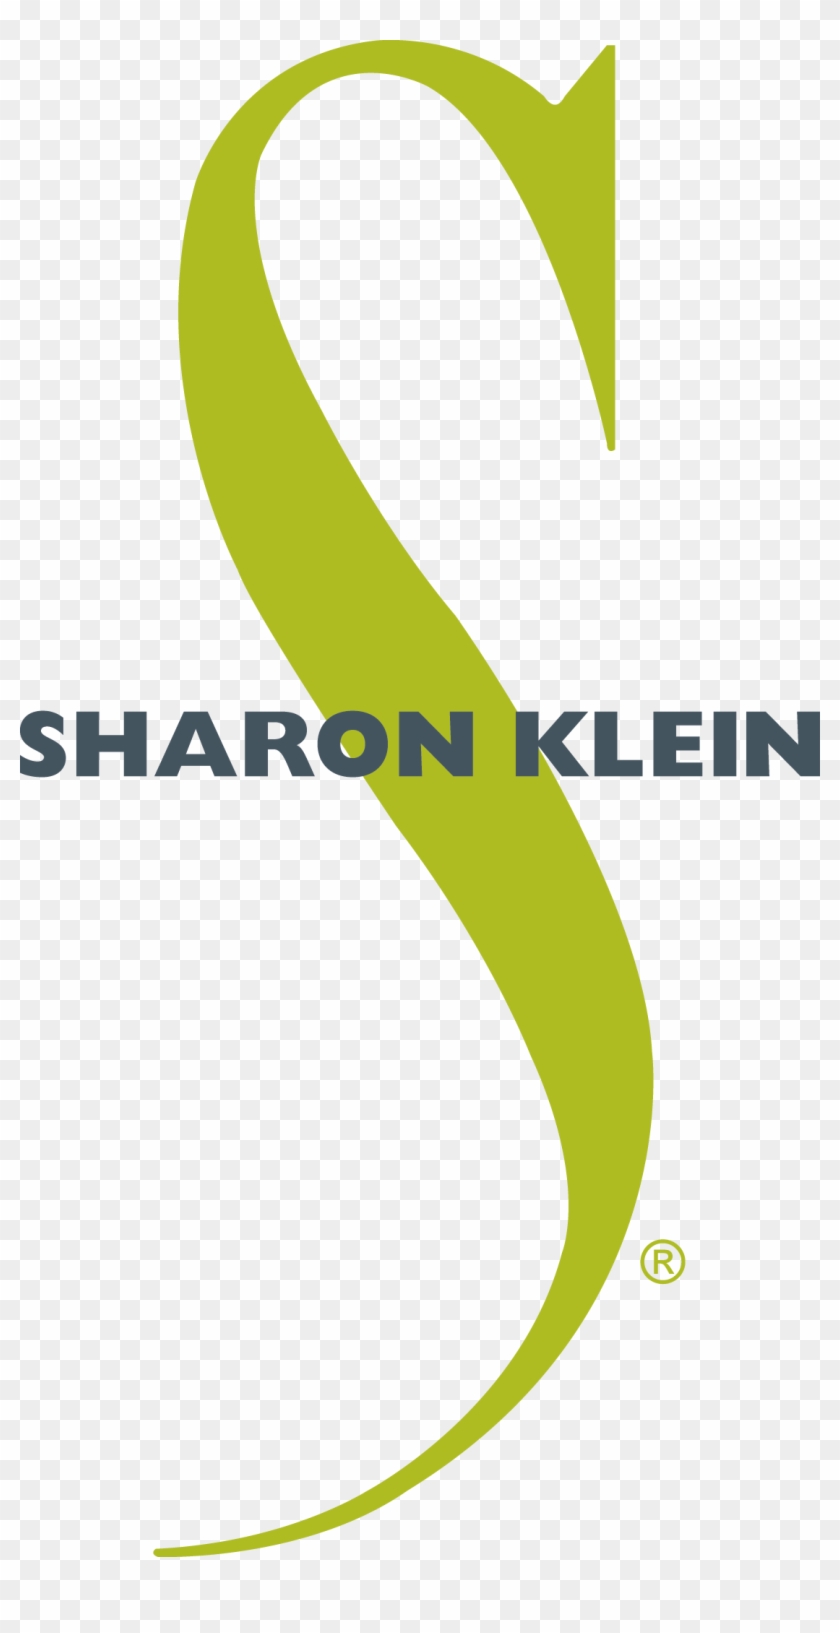 Sharon Klein Graphic Design - Design #988069